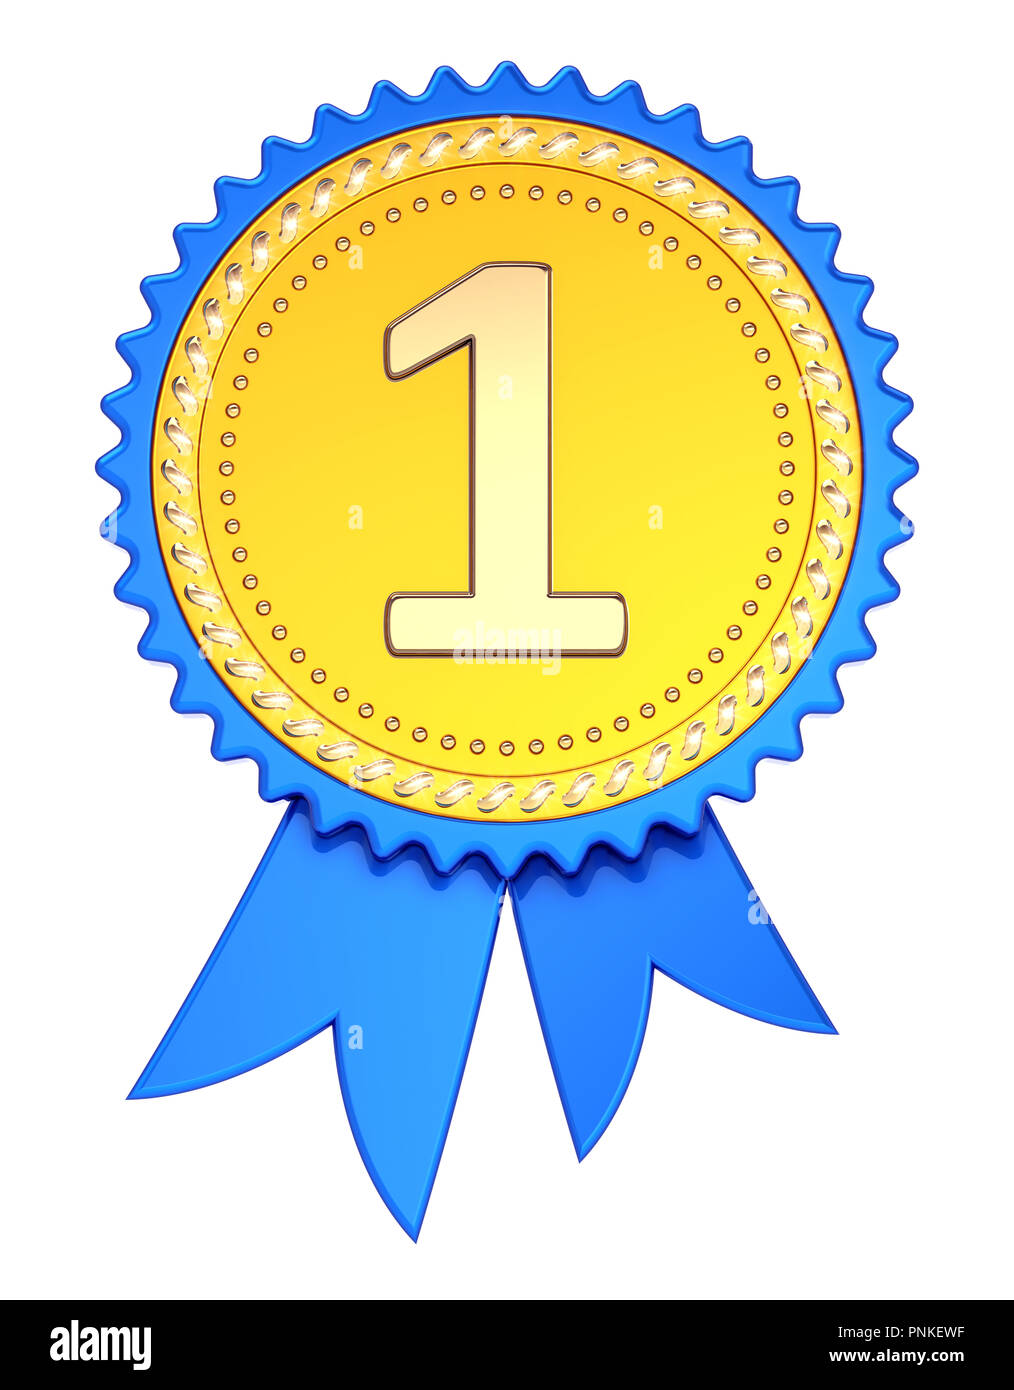 Award ribbon 1. ersten Platz, Nummer eins 1 Medaille golden Blue. die  Verwirklichung Erfolg, Champion Sieger Belohnung symbol Konzept.  3D-Darstellung Stockfotografie - Alamy